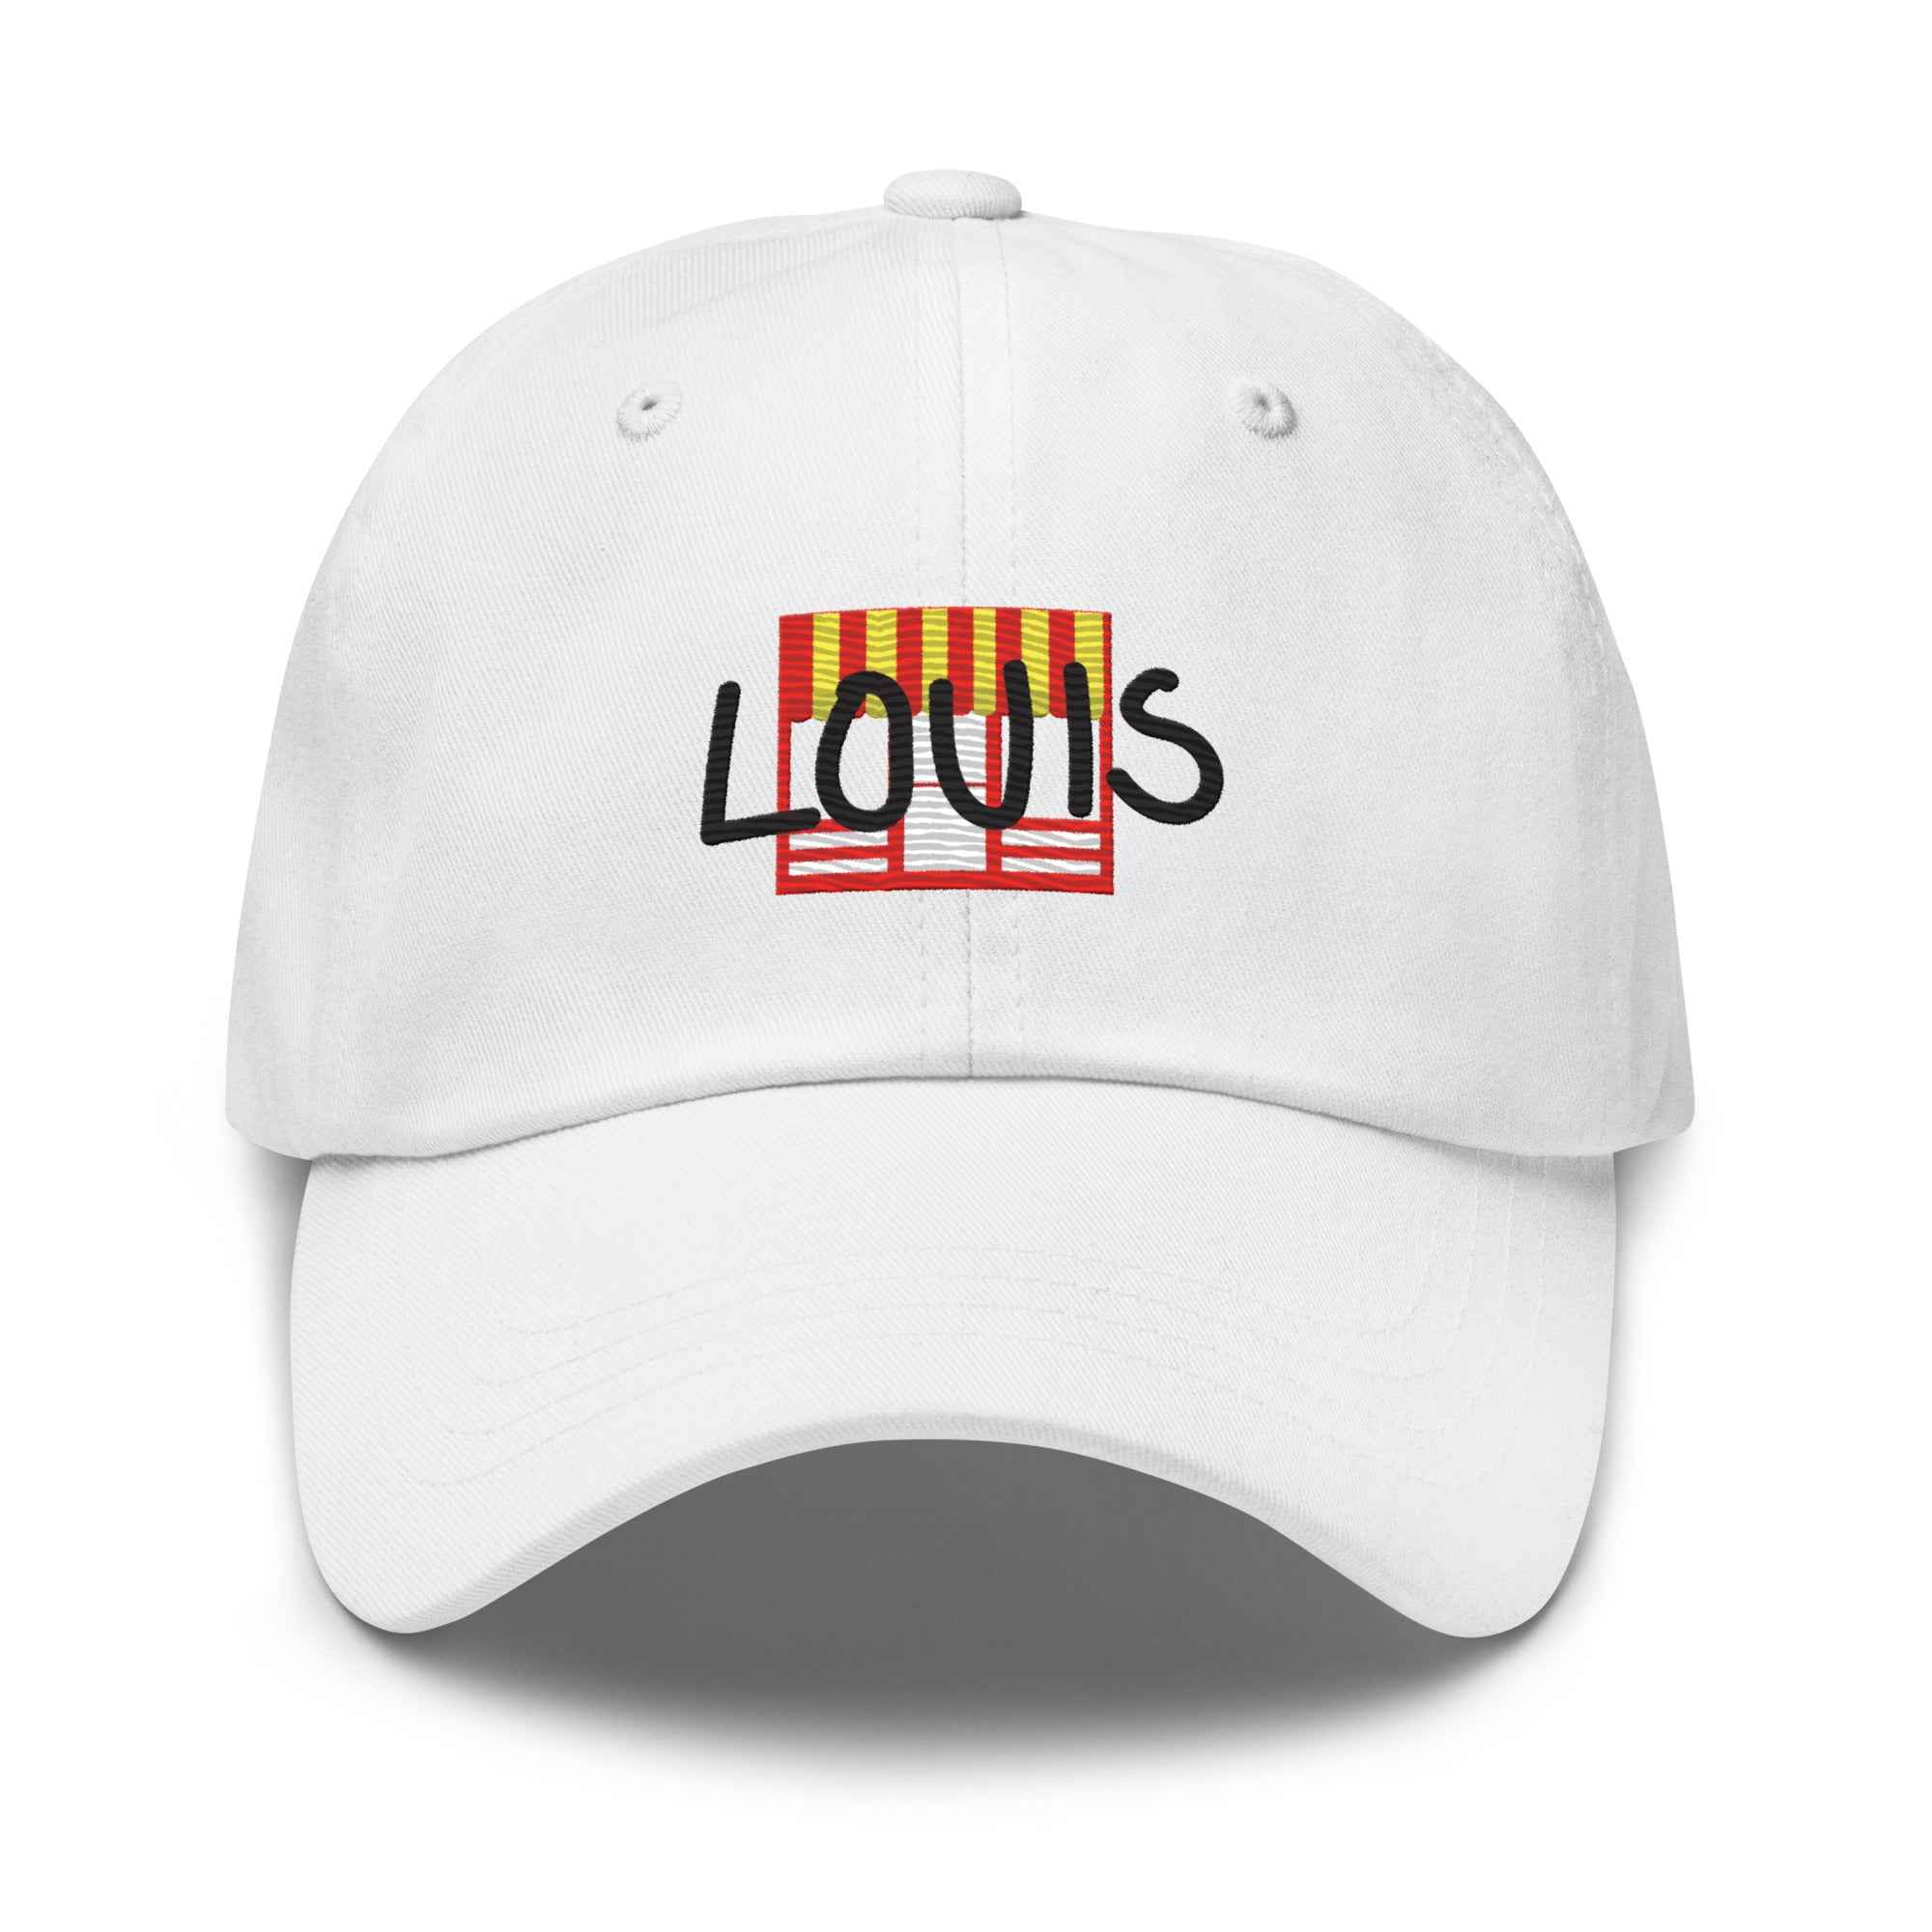 Louis Collegiate Dad hat in White